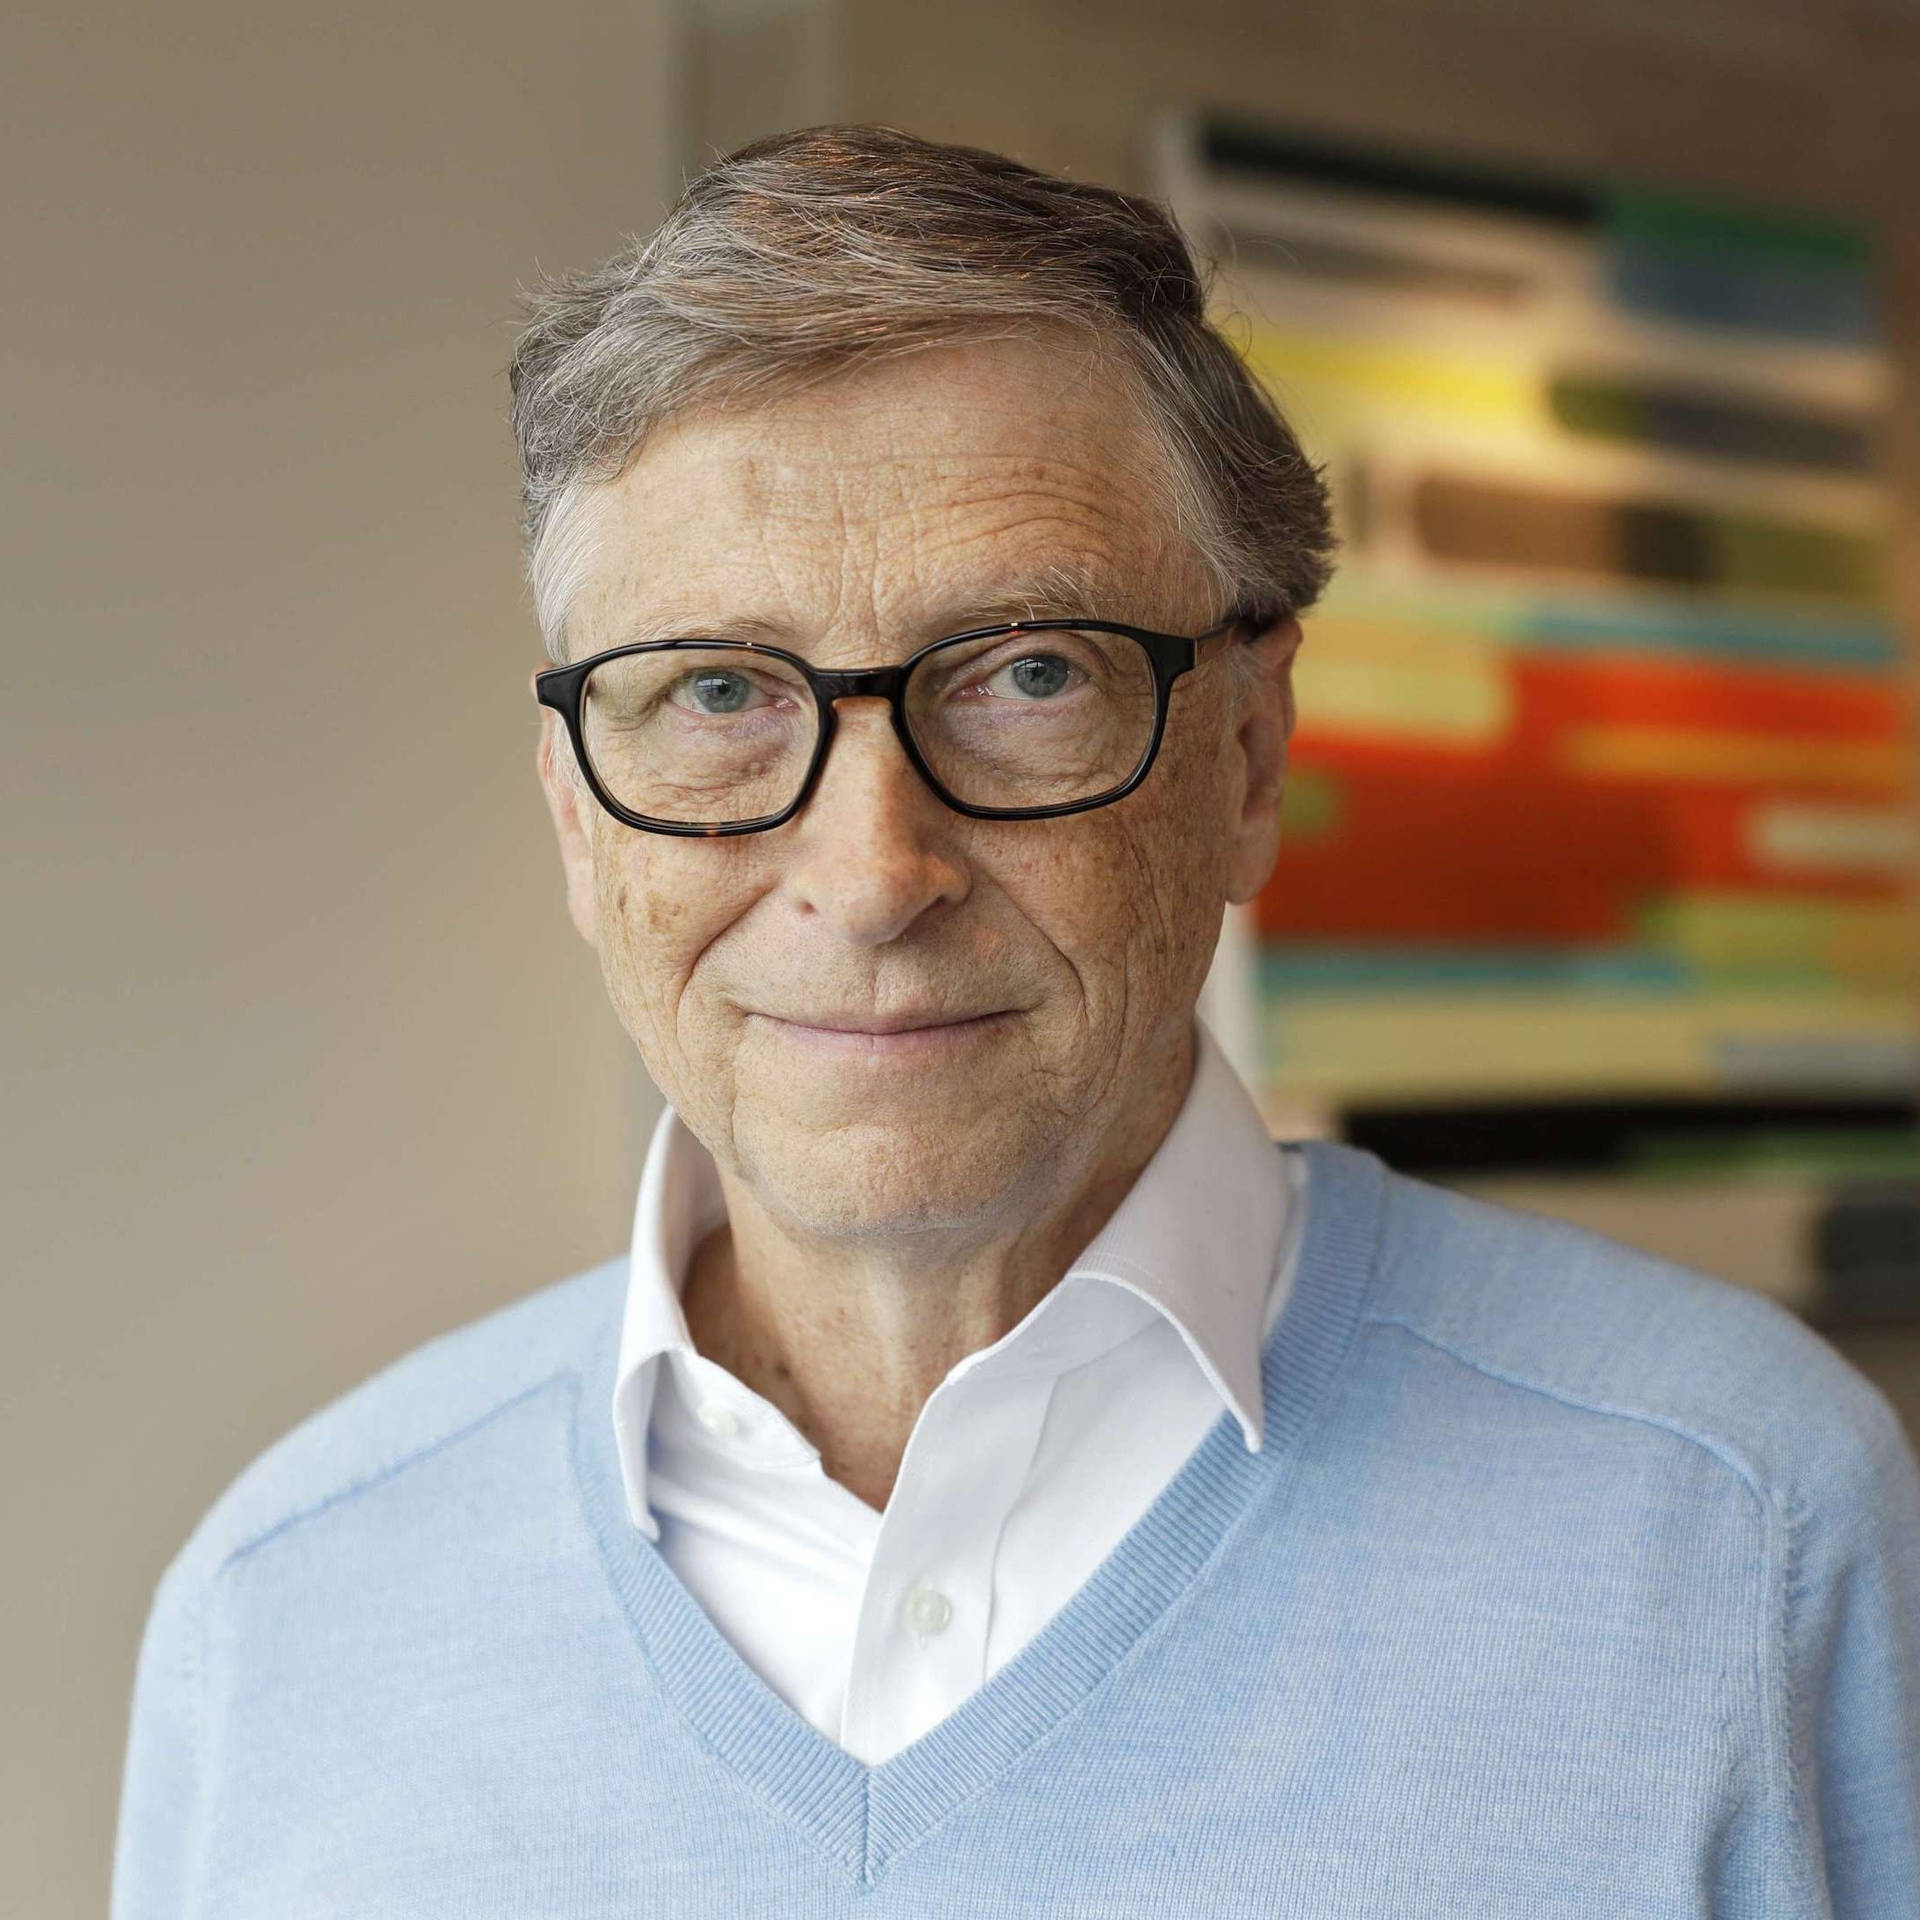 Bill Gates Deep Focus Face